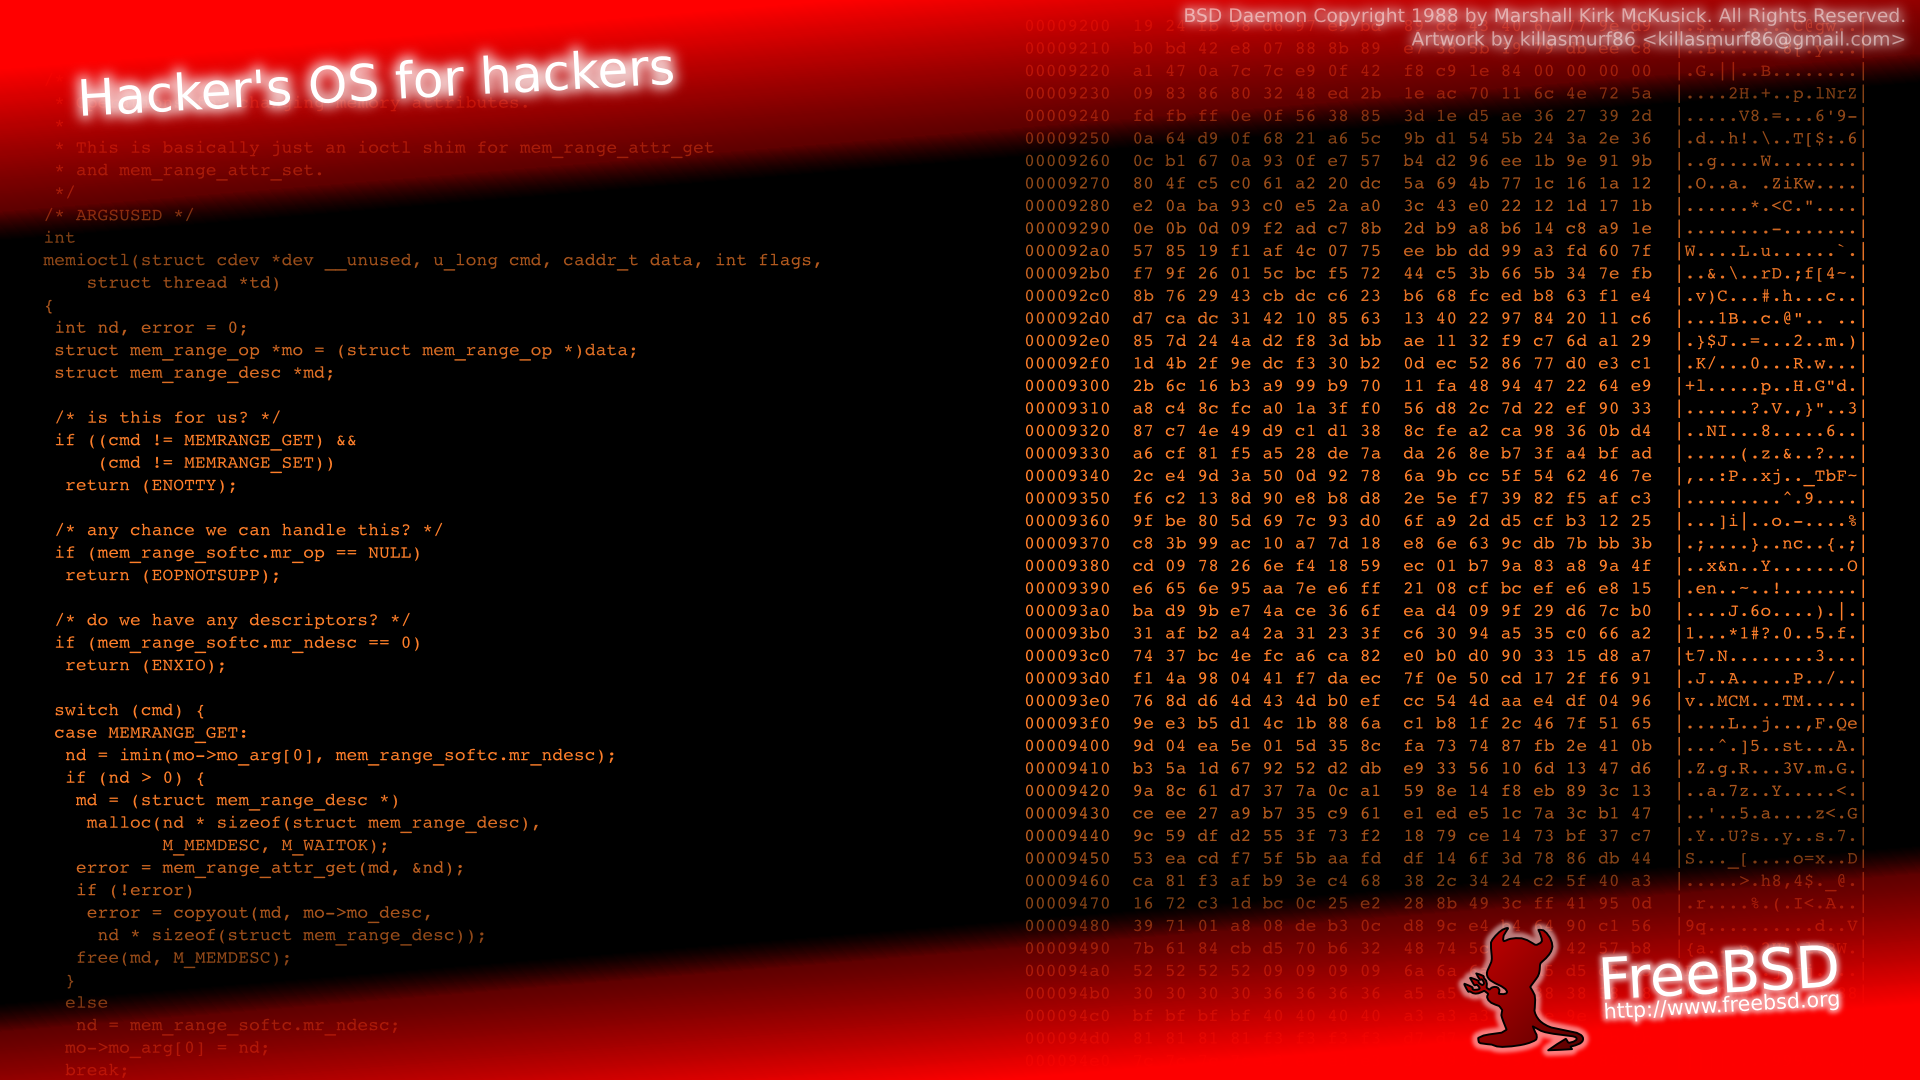 Hackers_Wallpaper_3.png